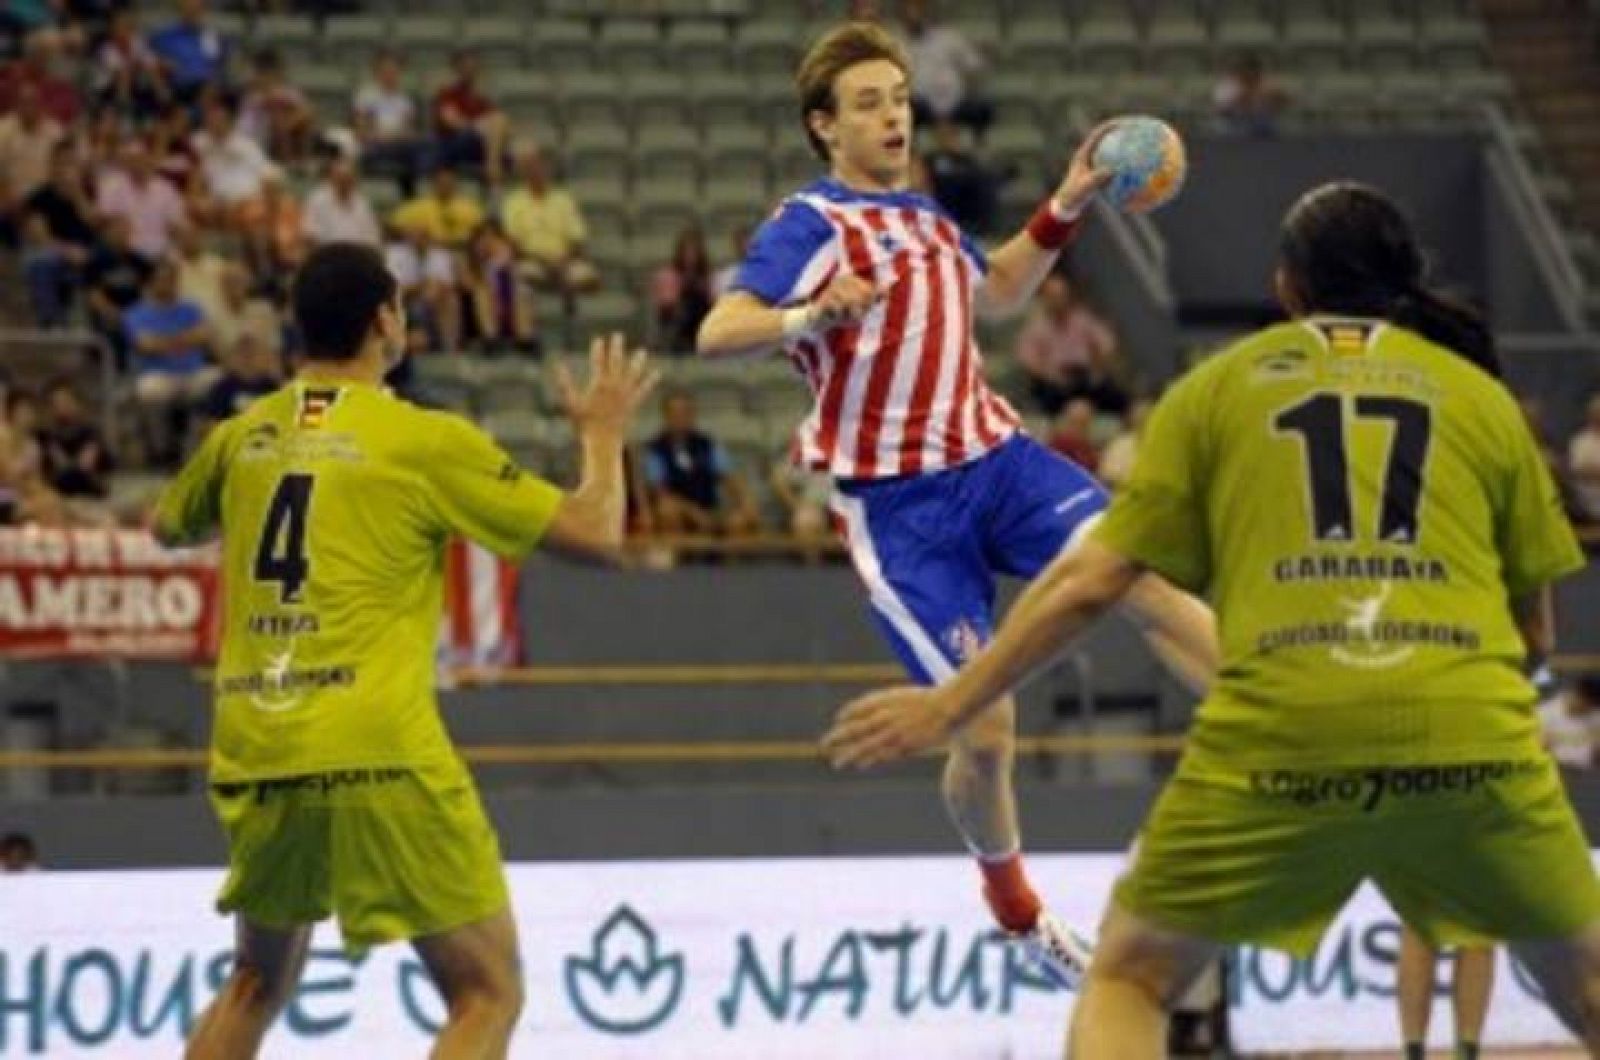 El duelo entre BM Atlético y Naturhouse será el que abra la XXIII edición de la Copa Asobal.